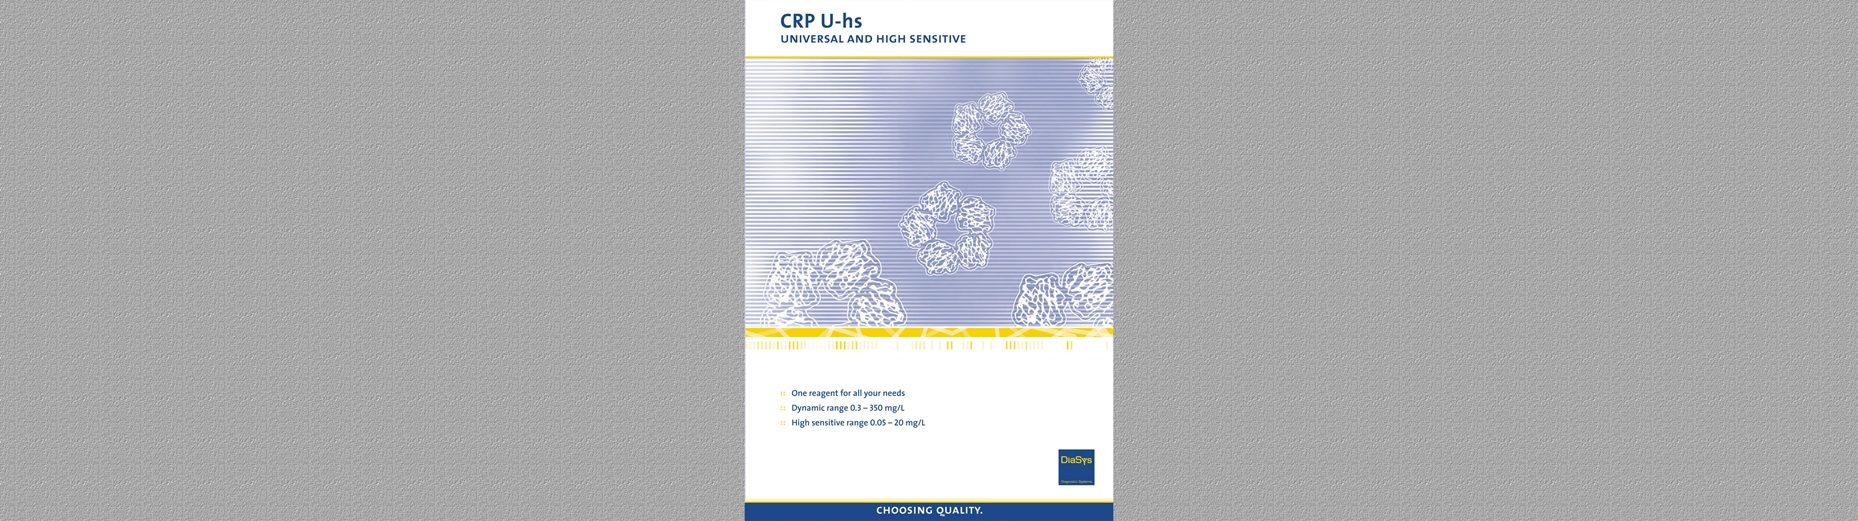 CRP U-hs Brochure